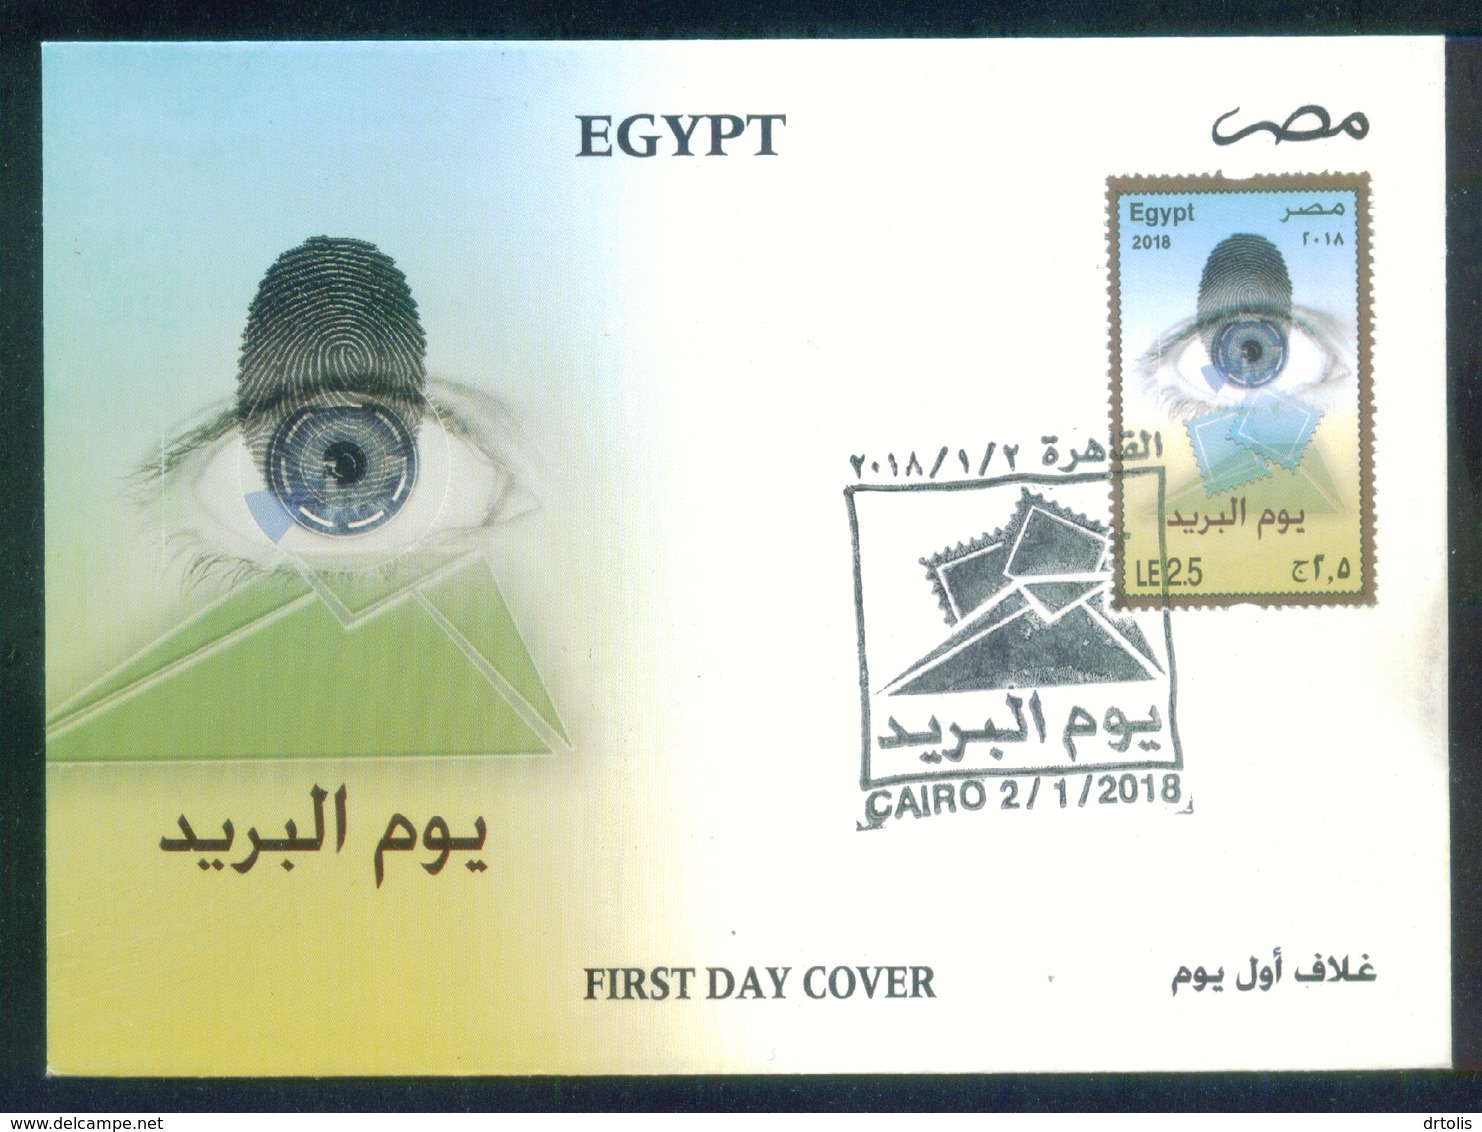 EGYPT / 2018 / POST DAY / FINGERPRINT / EYE / STAMP ON STAMP / ENVELOPE / VF - Covers & Documents